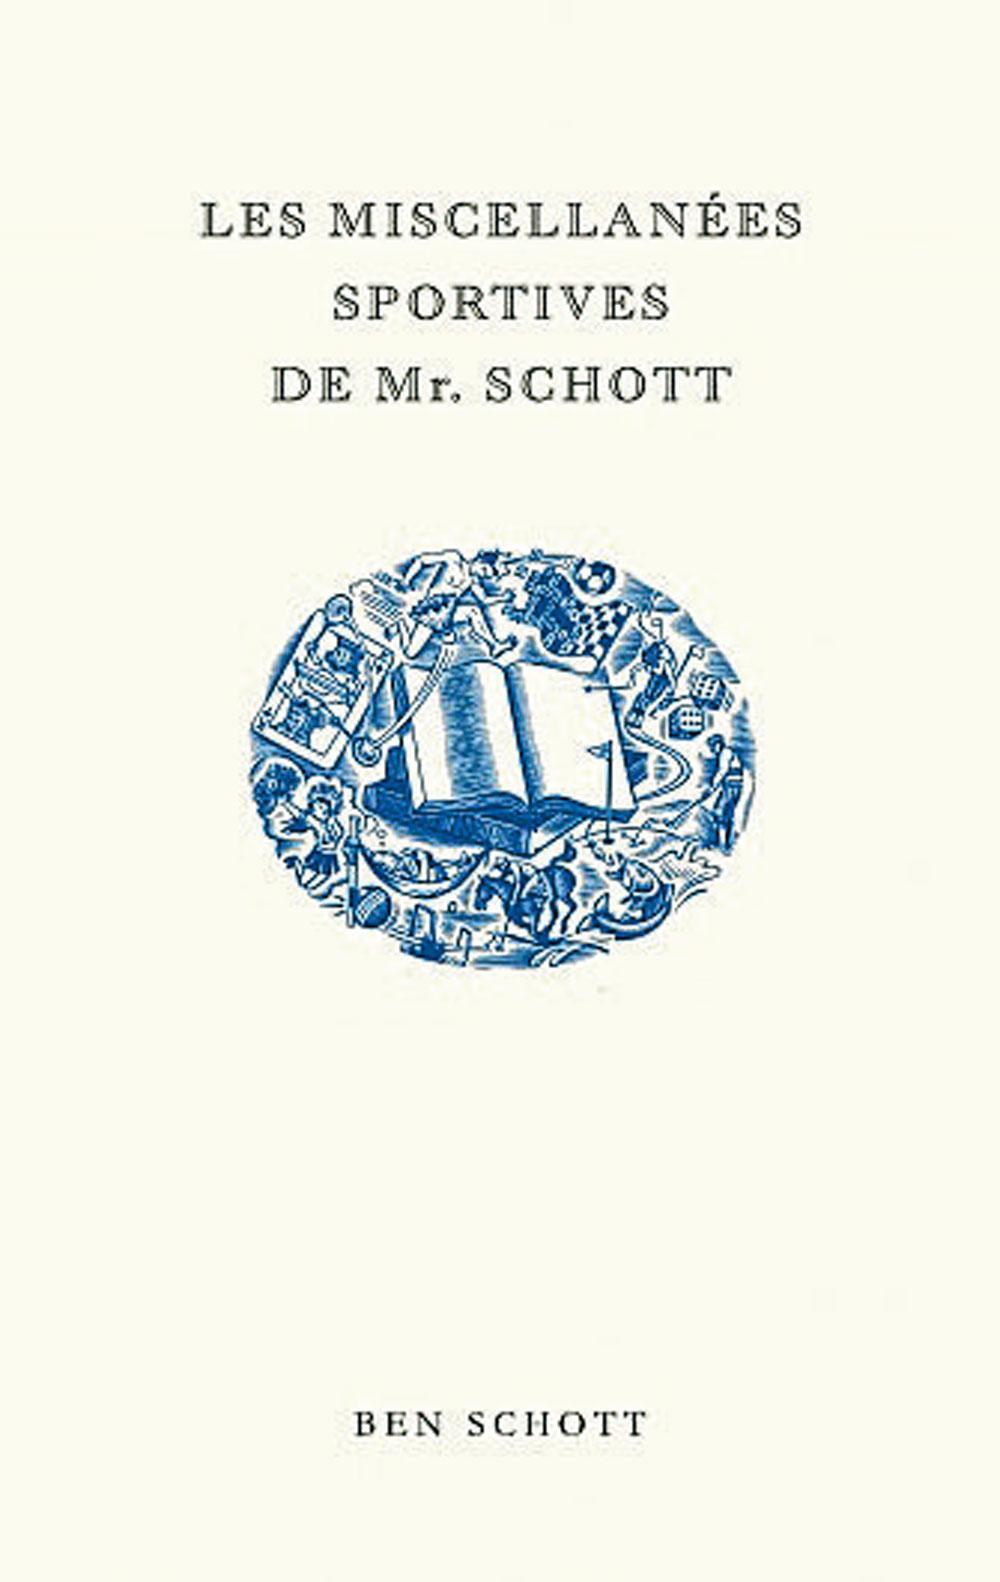 Les Miscellanées sportives de Mr. Schott, par Ben Schott, traduit de l'anglais par Elie Robert-Nicoud et Charles Giol, éd. du Sous-sol, 160 p.